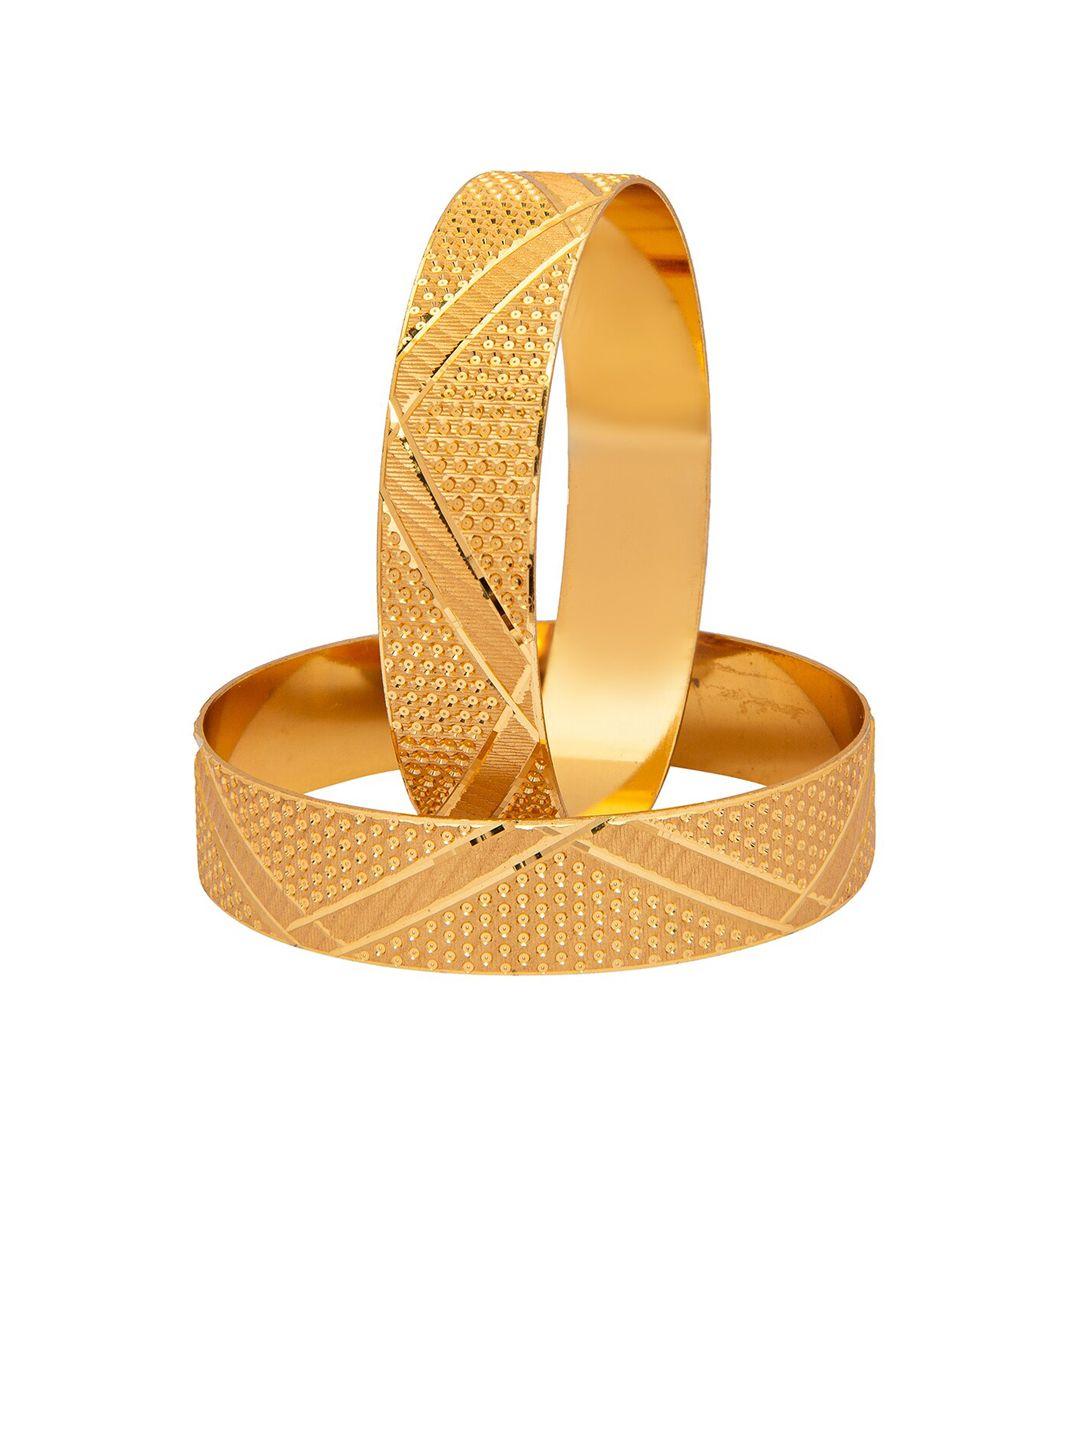 shining jewel - by shivansh set of 2 gold plated brass bangle